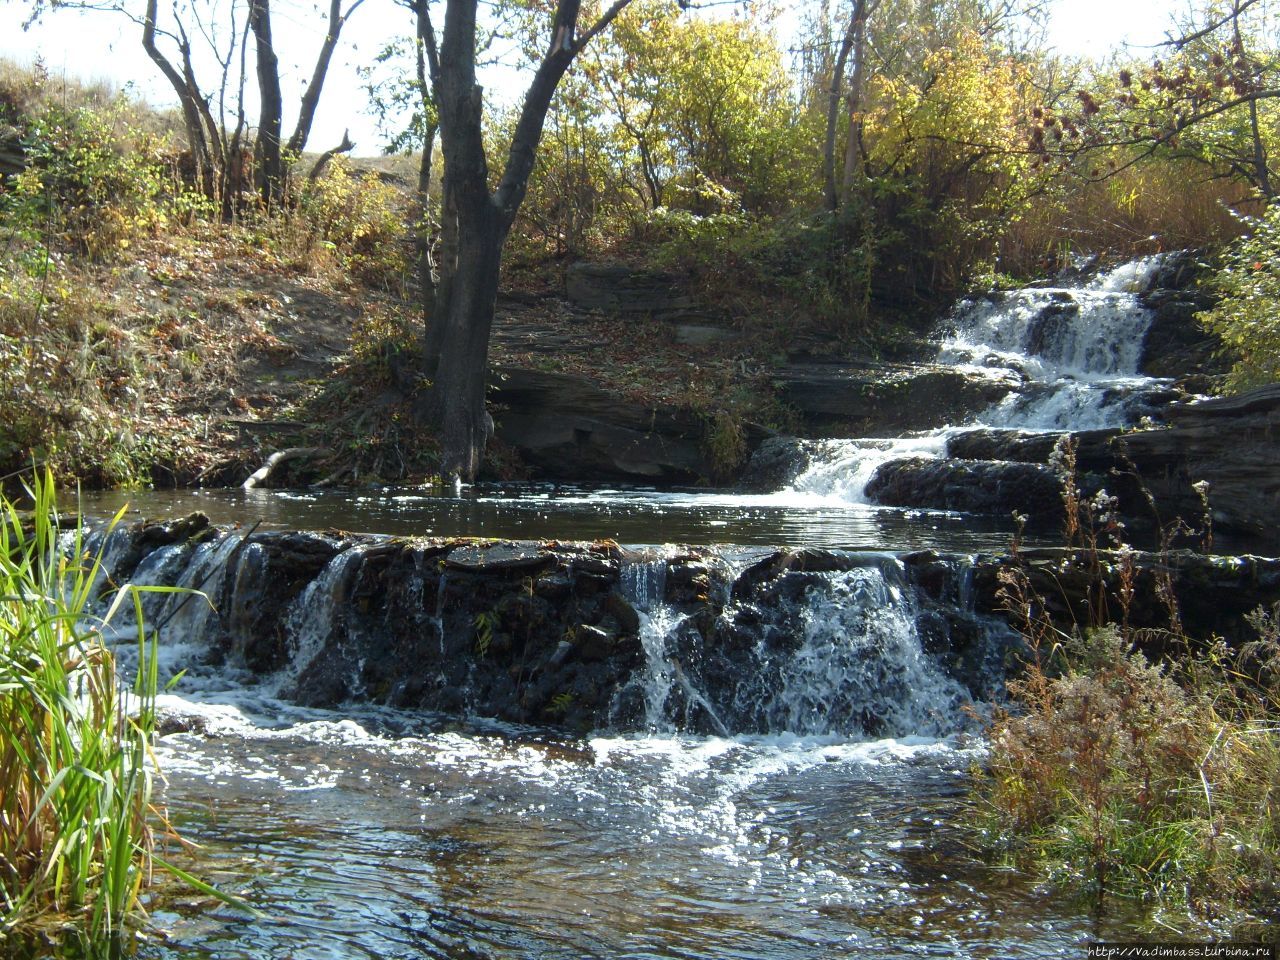 Водопад Макшеевский,г.Артёмовск,,Луганская область Луганская область, Украина